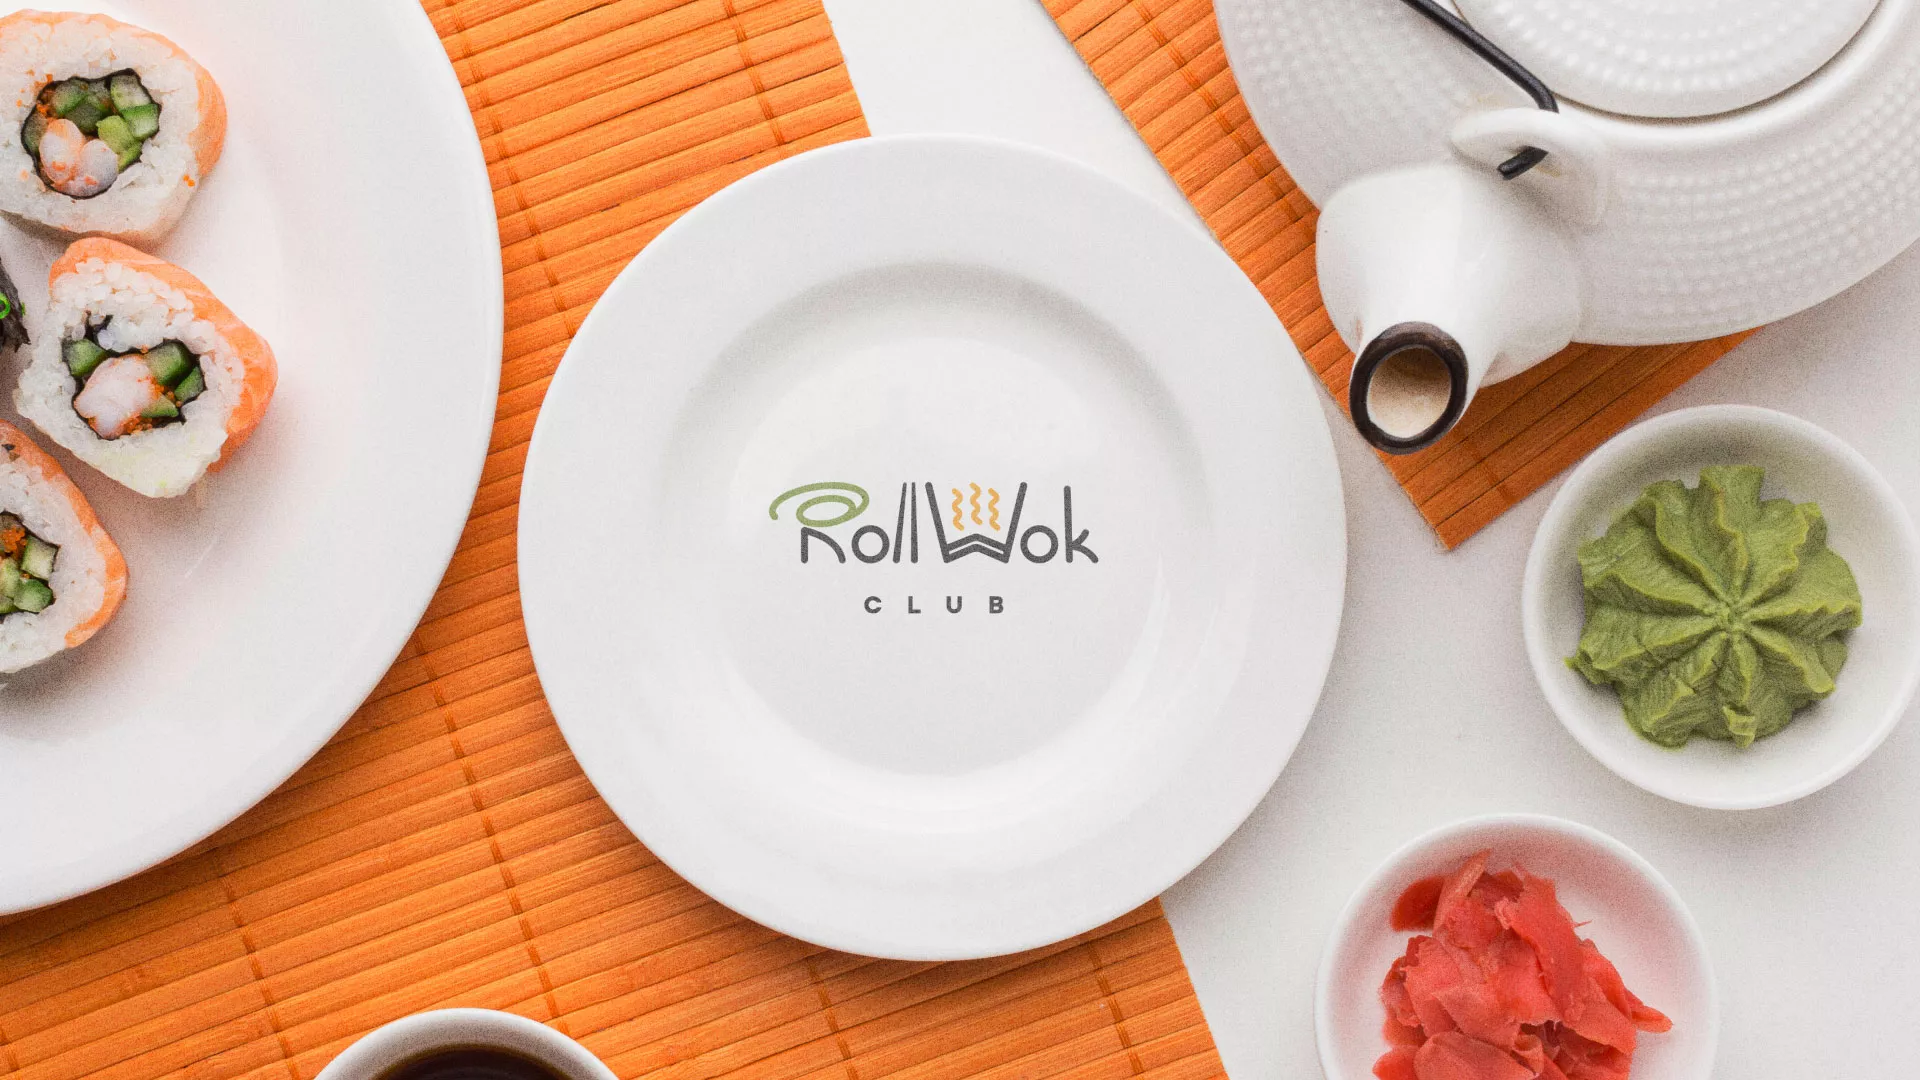 Разработка логотипа и фирменного стиля суши-бара «Roll Wok Club» в Воскресенске